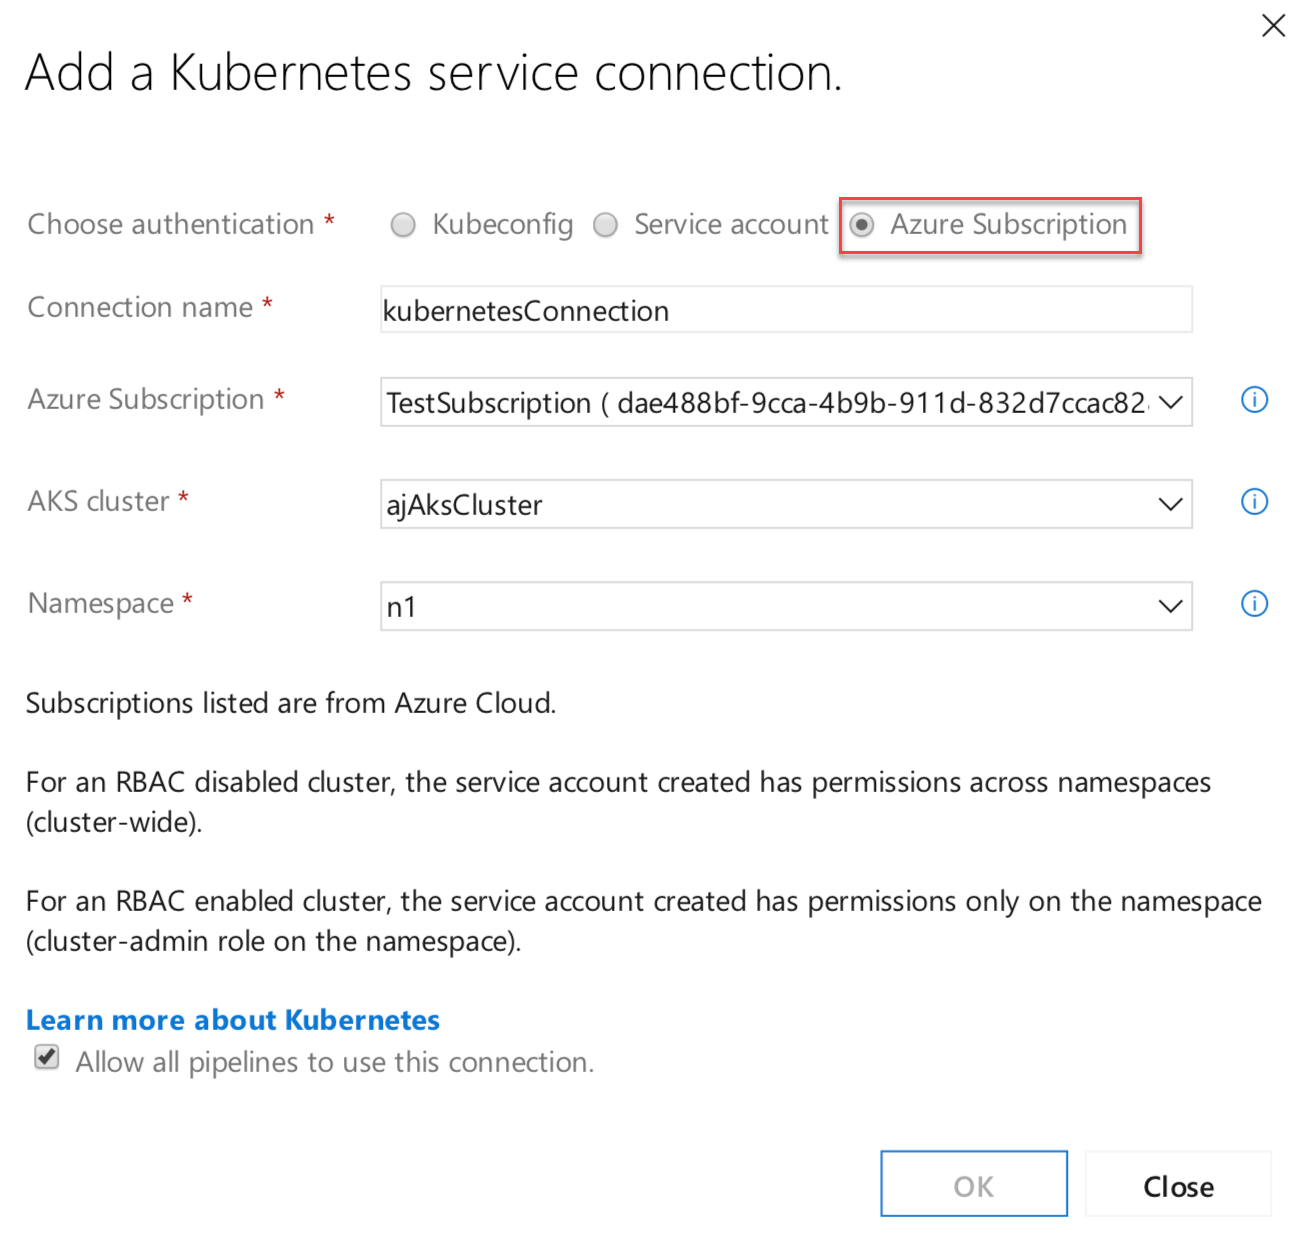 Captura de tela da caixa de diálogo Adicionar uma conexão de serviço Kubernetes com a opção Assinatura do Azure destacada.